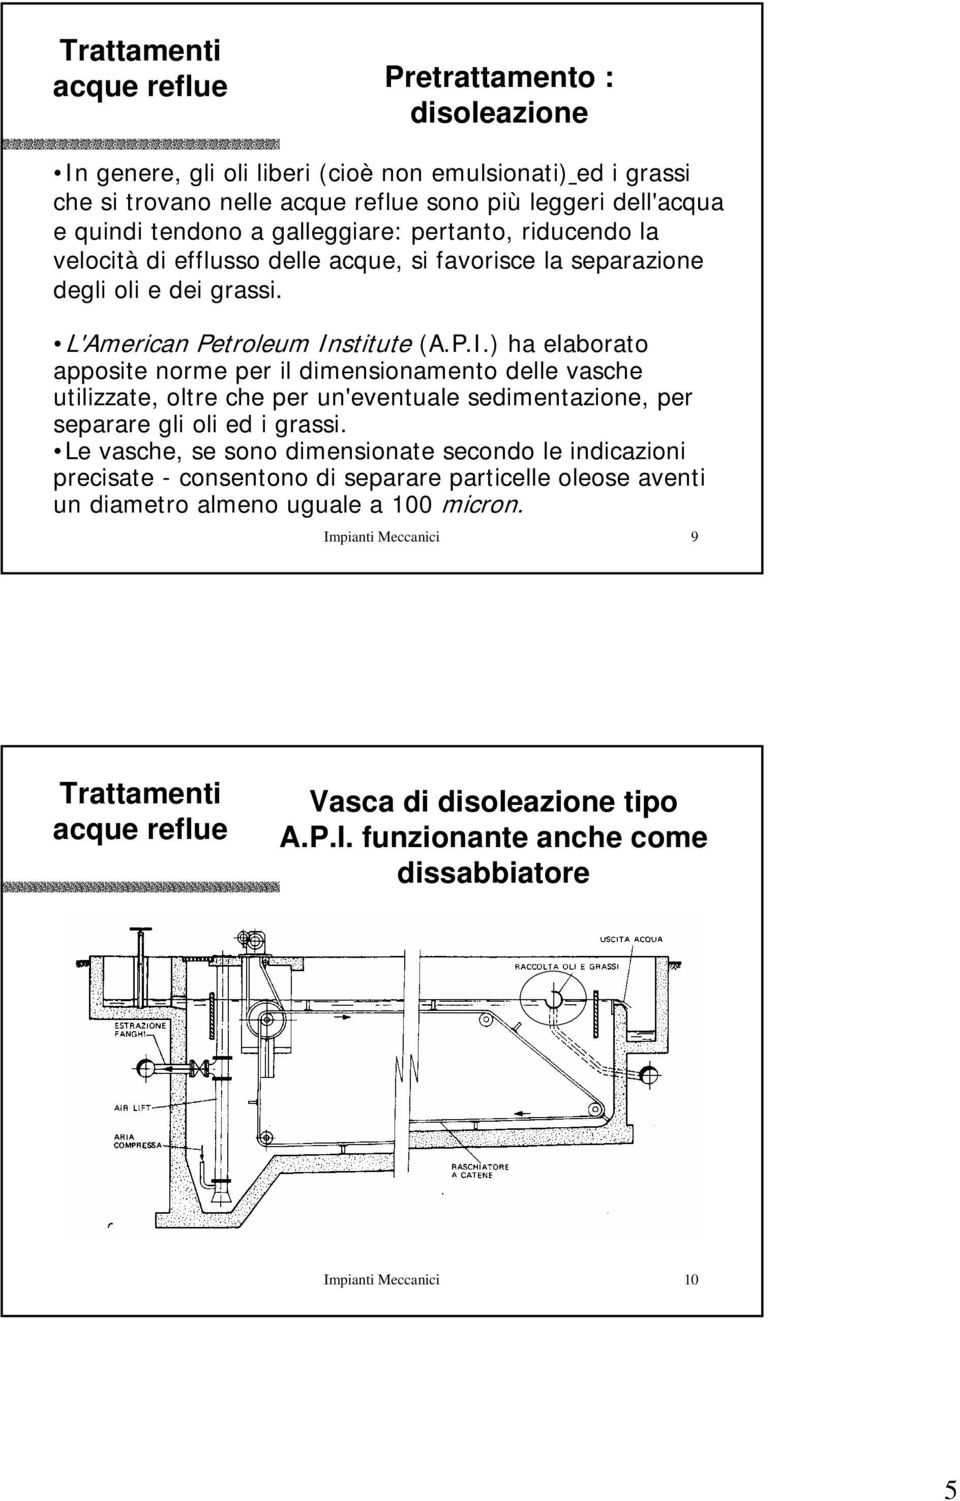 stitute (A.P.I.) ha elaborato apposite norme per il dimensionamento delle vasche utilizzate, oltre che per un'eventuale sedimentazione, per separare gli oli ed i grassi.